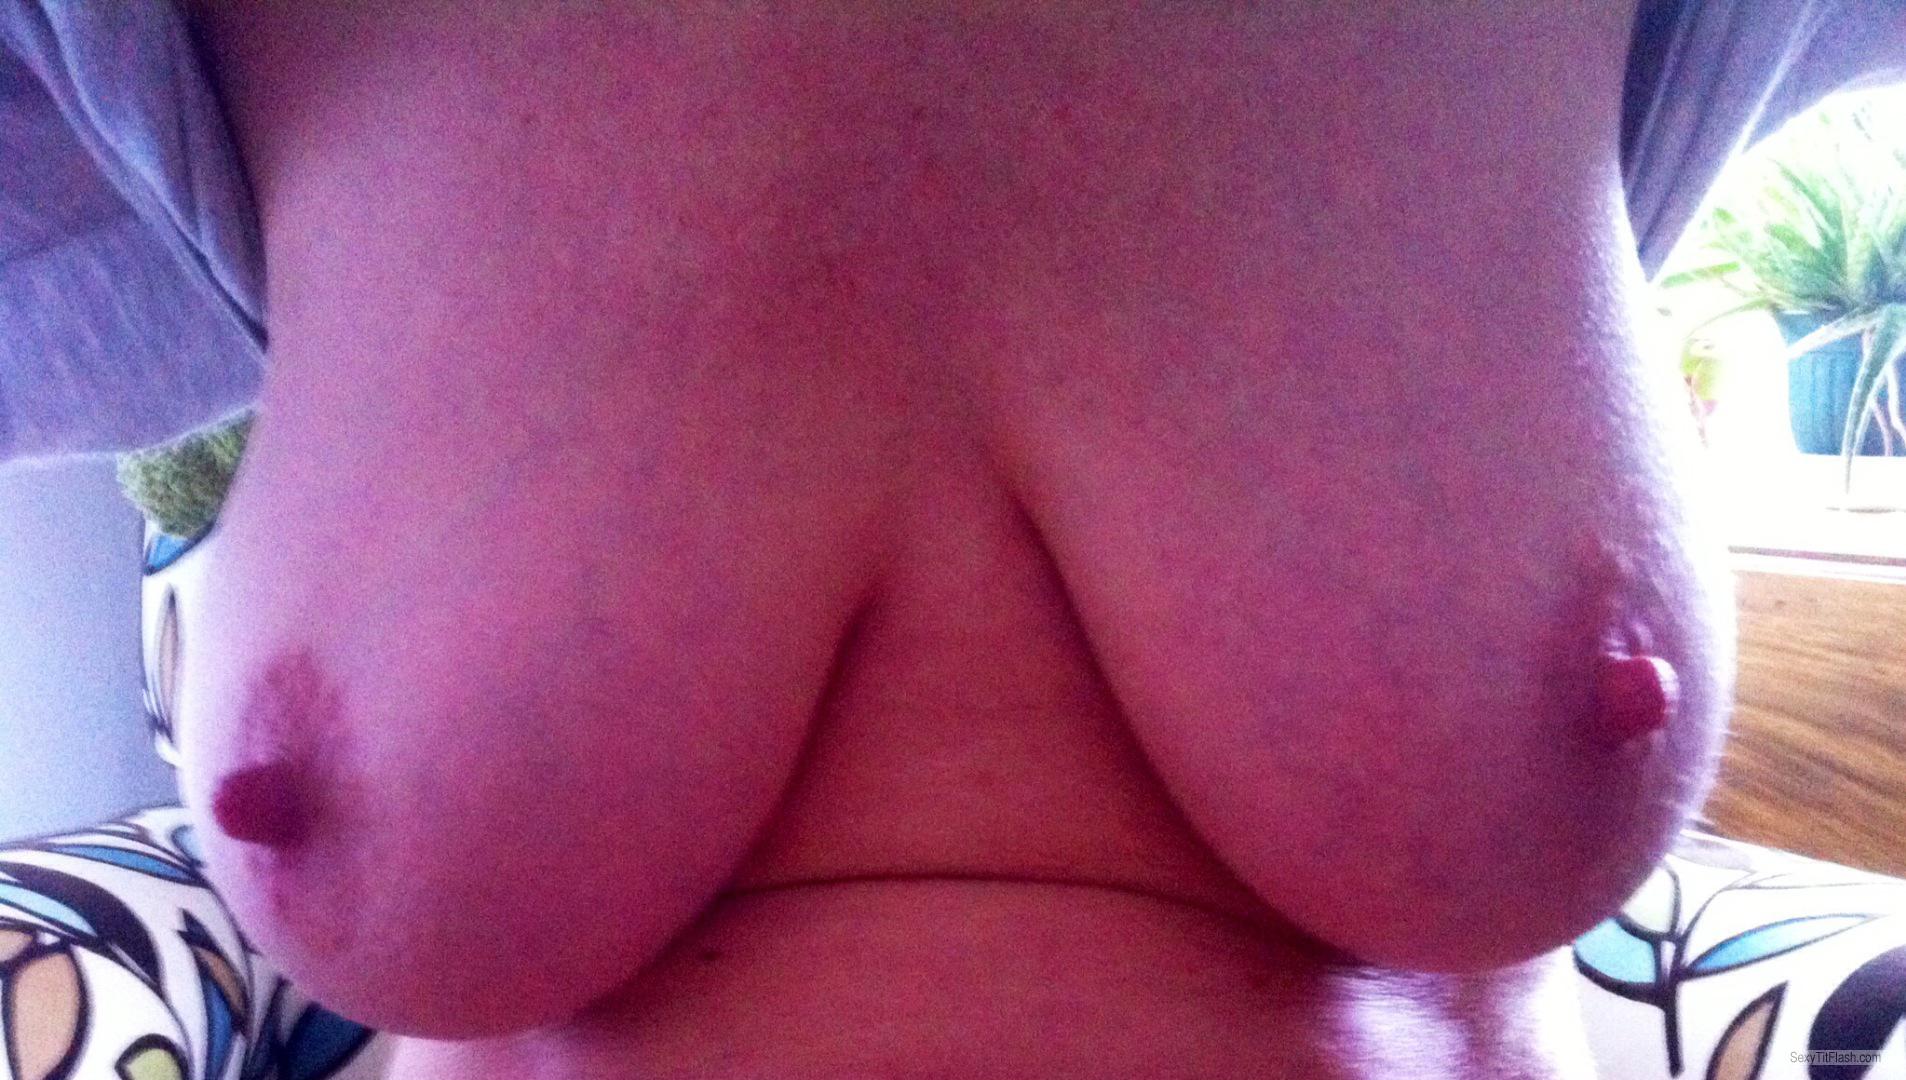 My Big Tits Selfie by Jessie